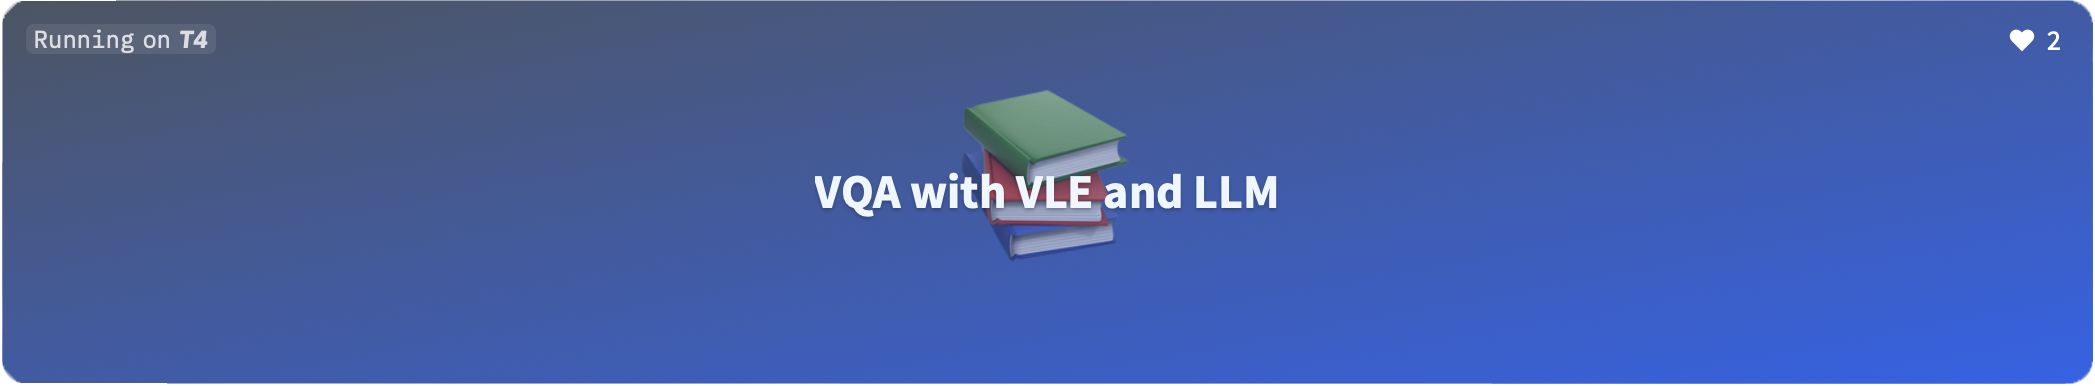 VLE-based VQA Demo